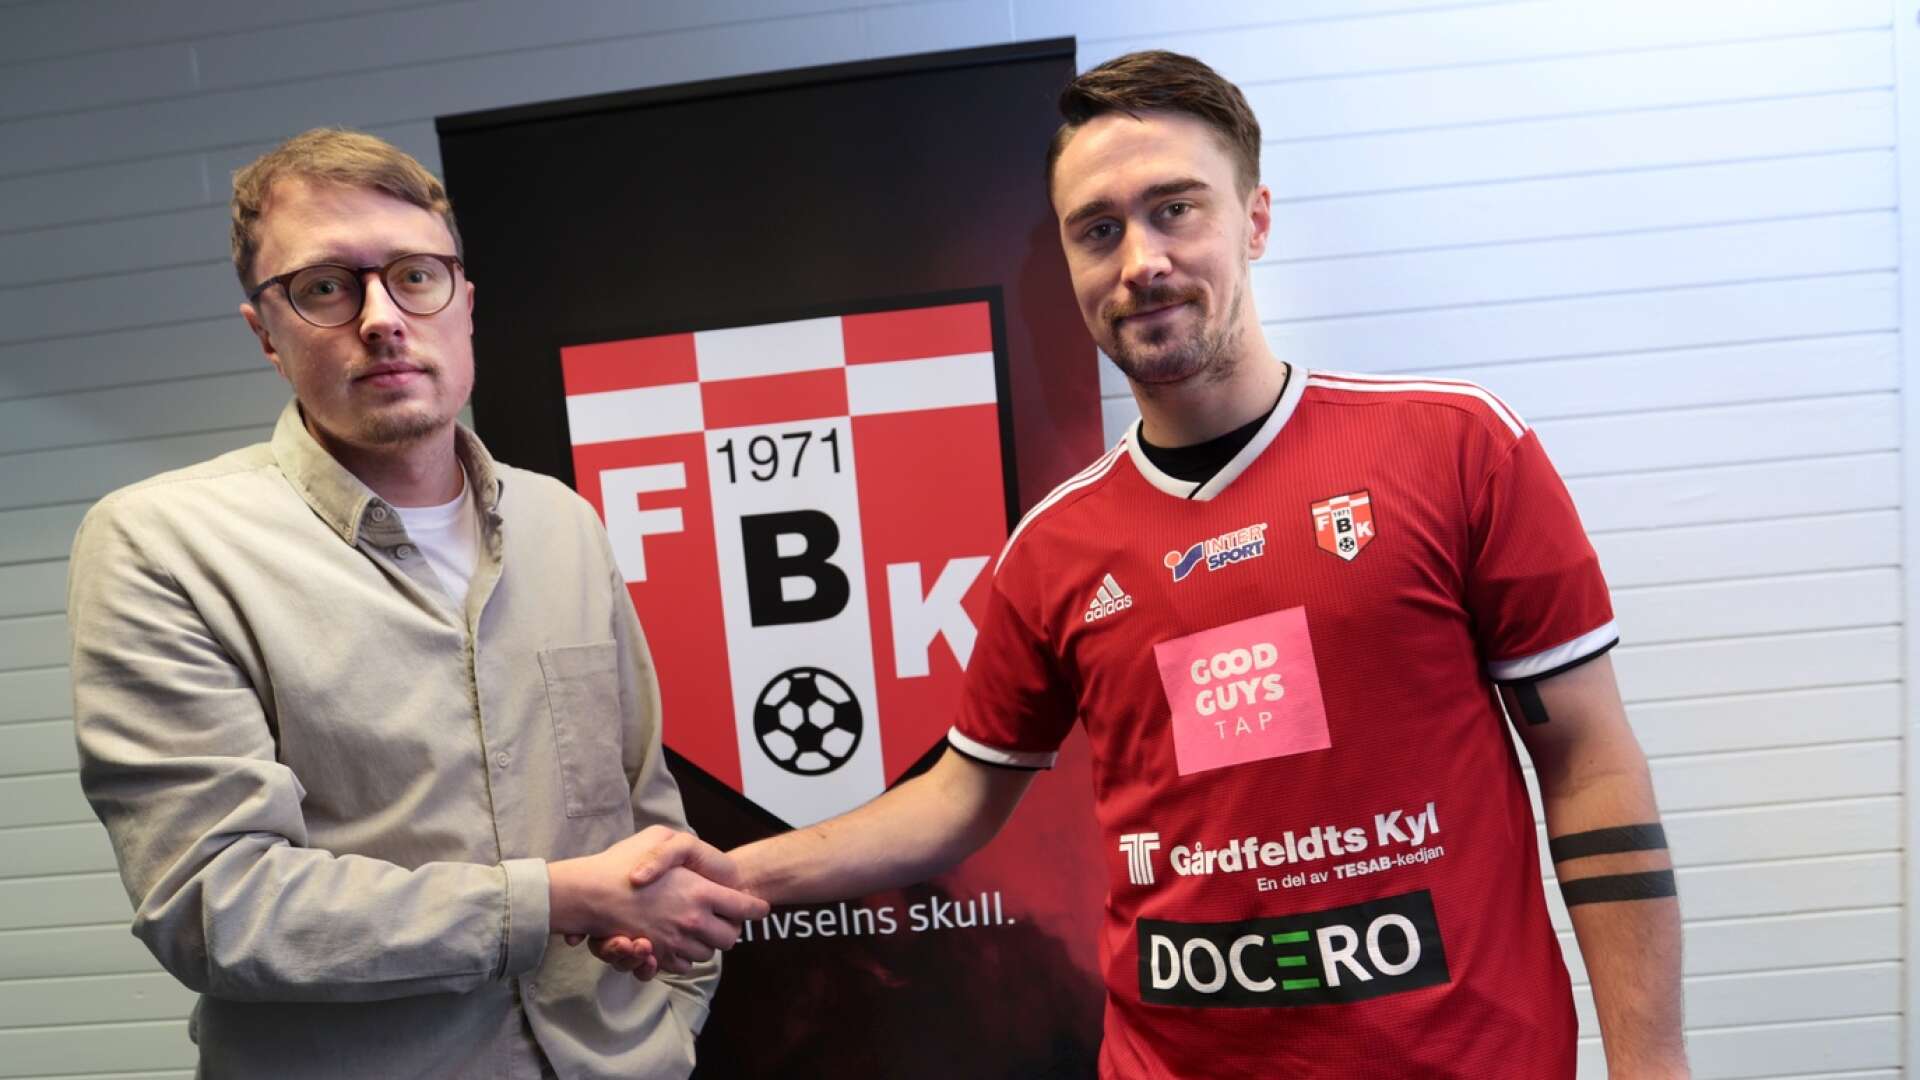 Nye sportchefen Erik Wennberg hälsar André Jernberg välkommen till FBK Karlstad.